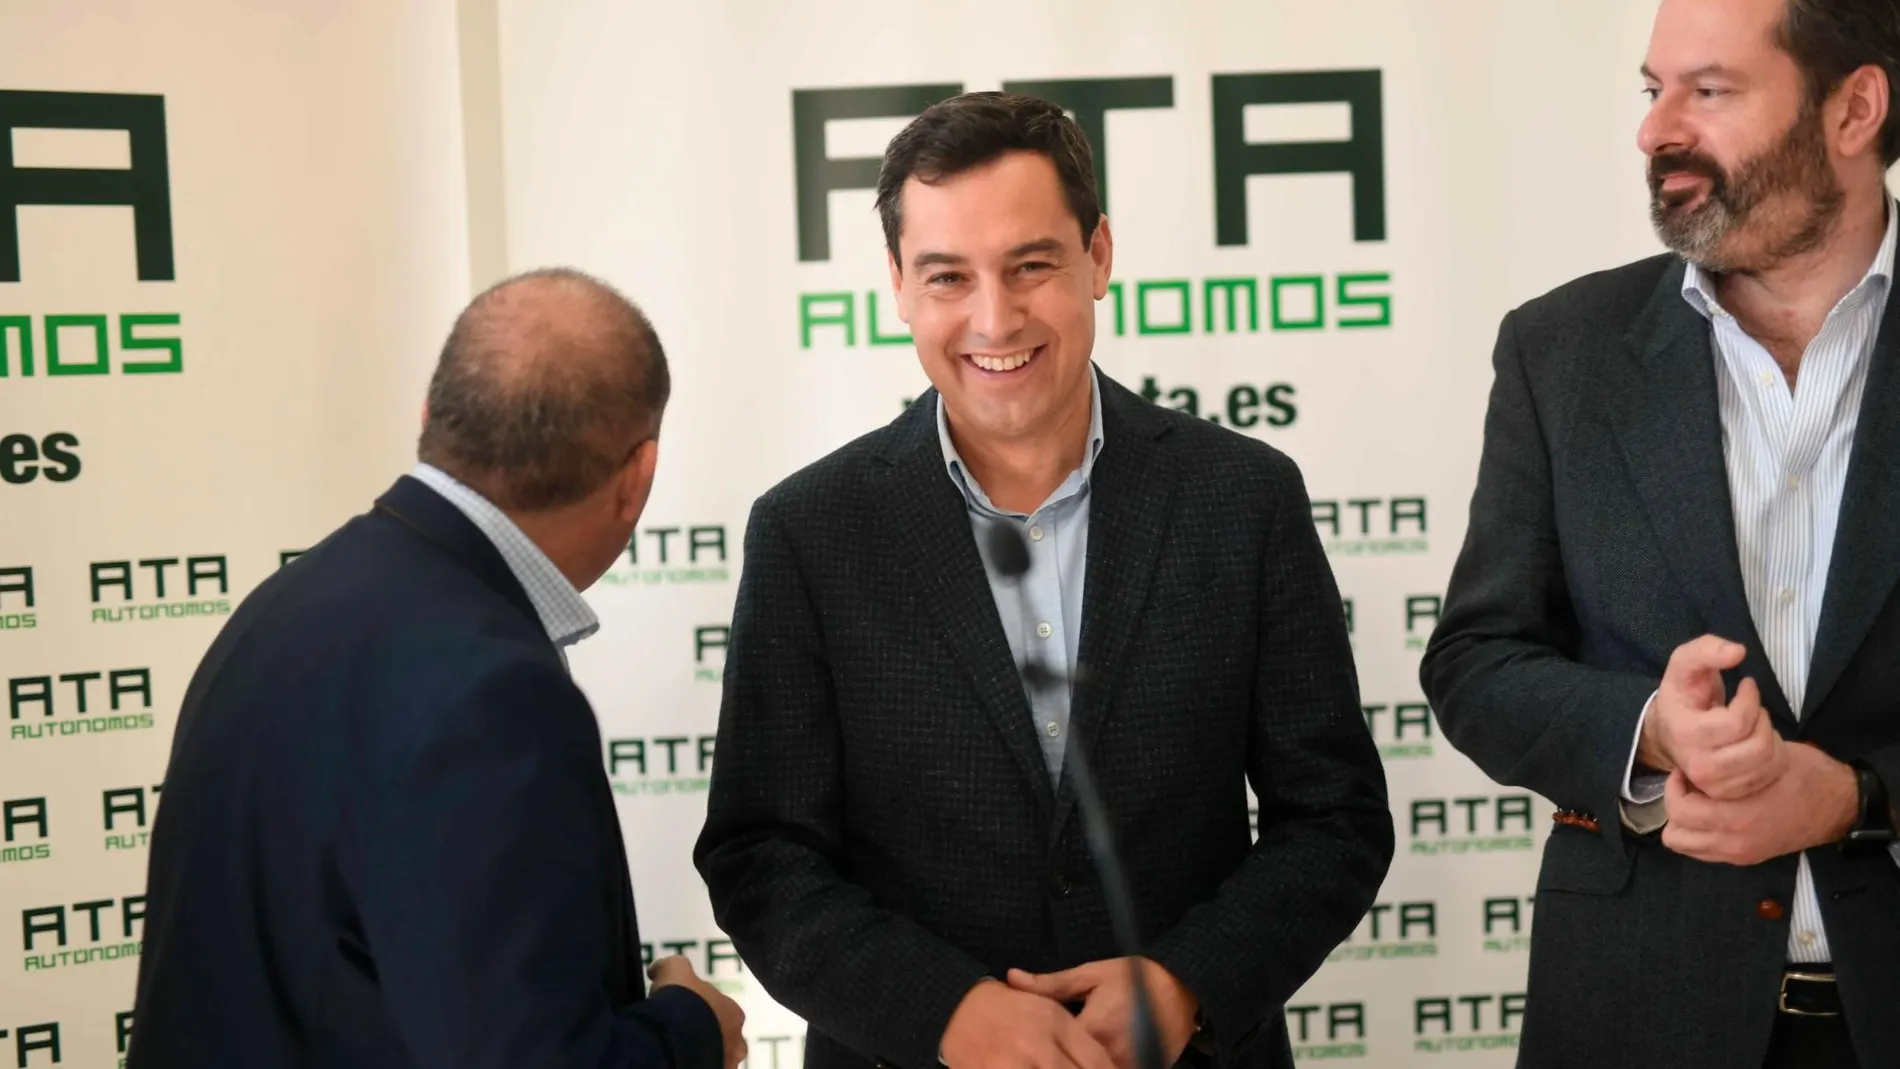 El candidato del PP a la Presidencia de la Junta de Andalucía, Juanma Moreno, hoy en rueda de prensa / Foto: Efe